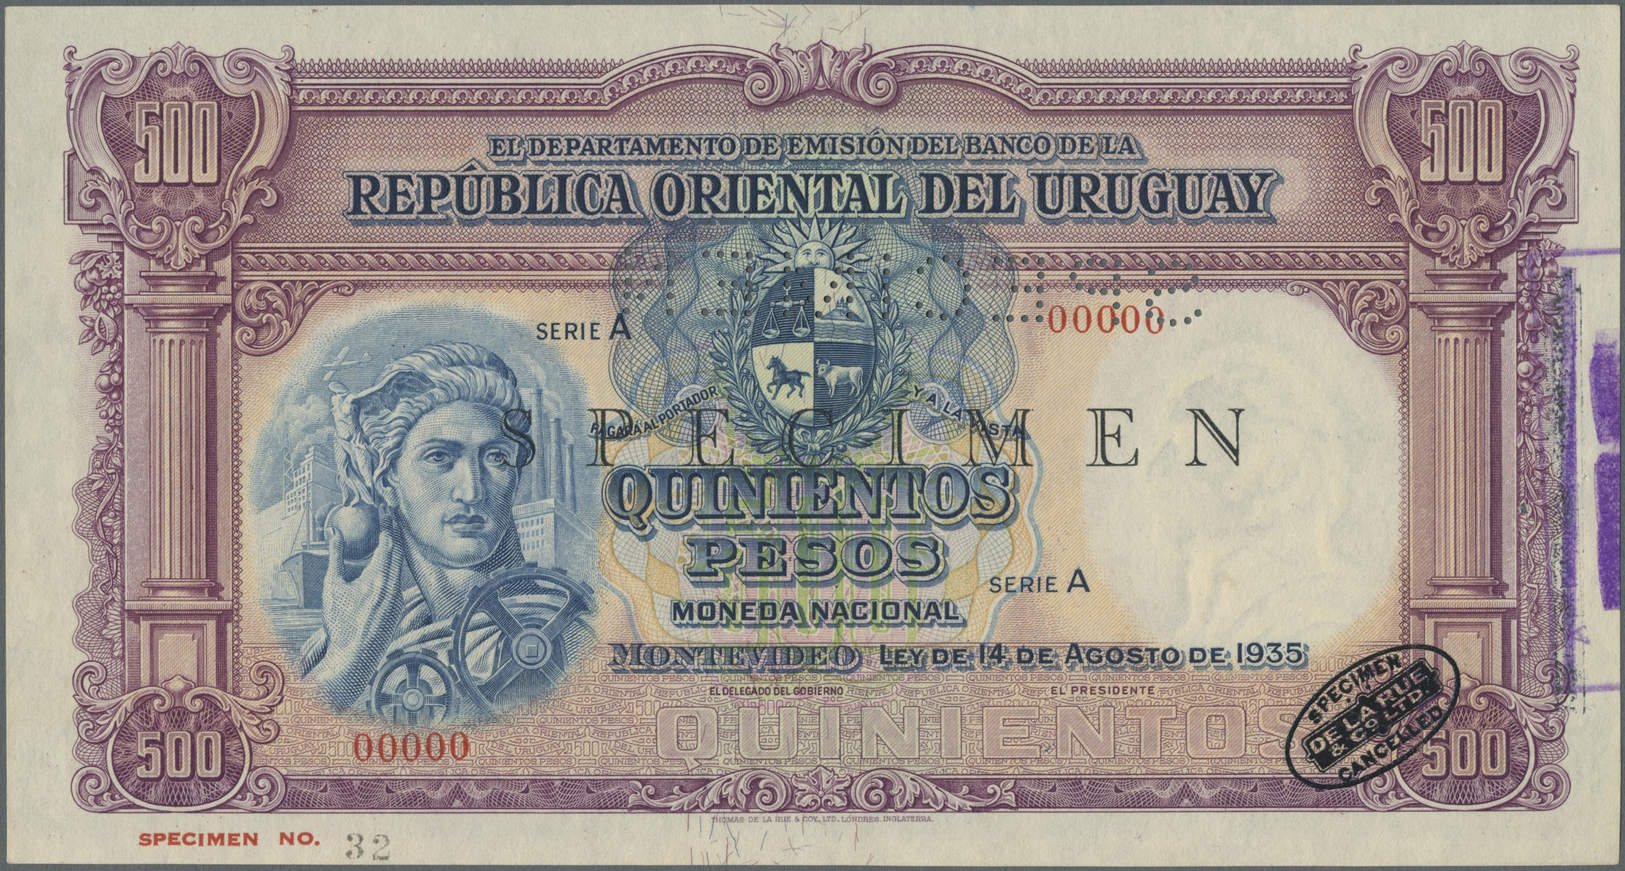 03466 Uruguay: 500 Pesos 1935 Specimen P. 32s With Specimen Perforation, Zero Serial Numbers, In Condition: AUNC. - Uruguay